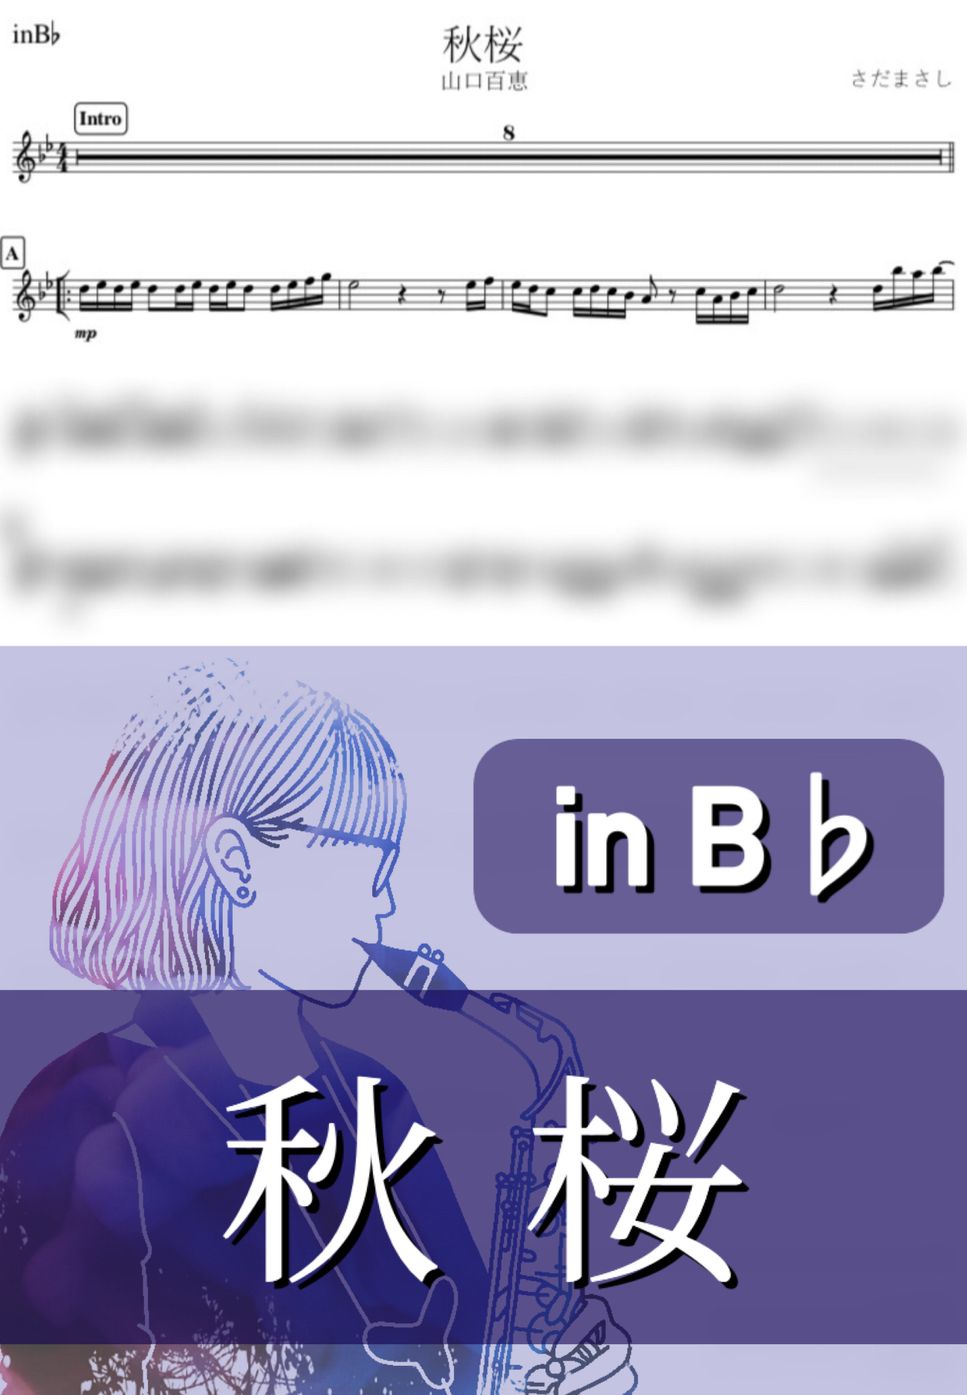 山口百恵 - 秋桜 (B♭) by kanamusic